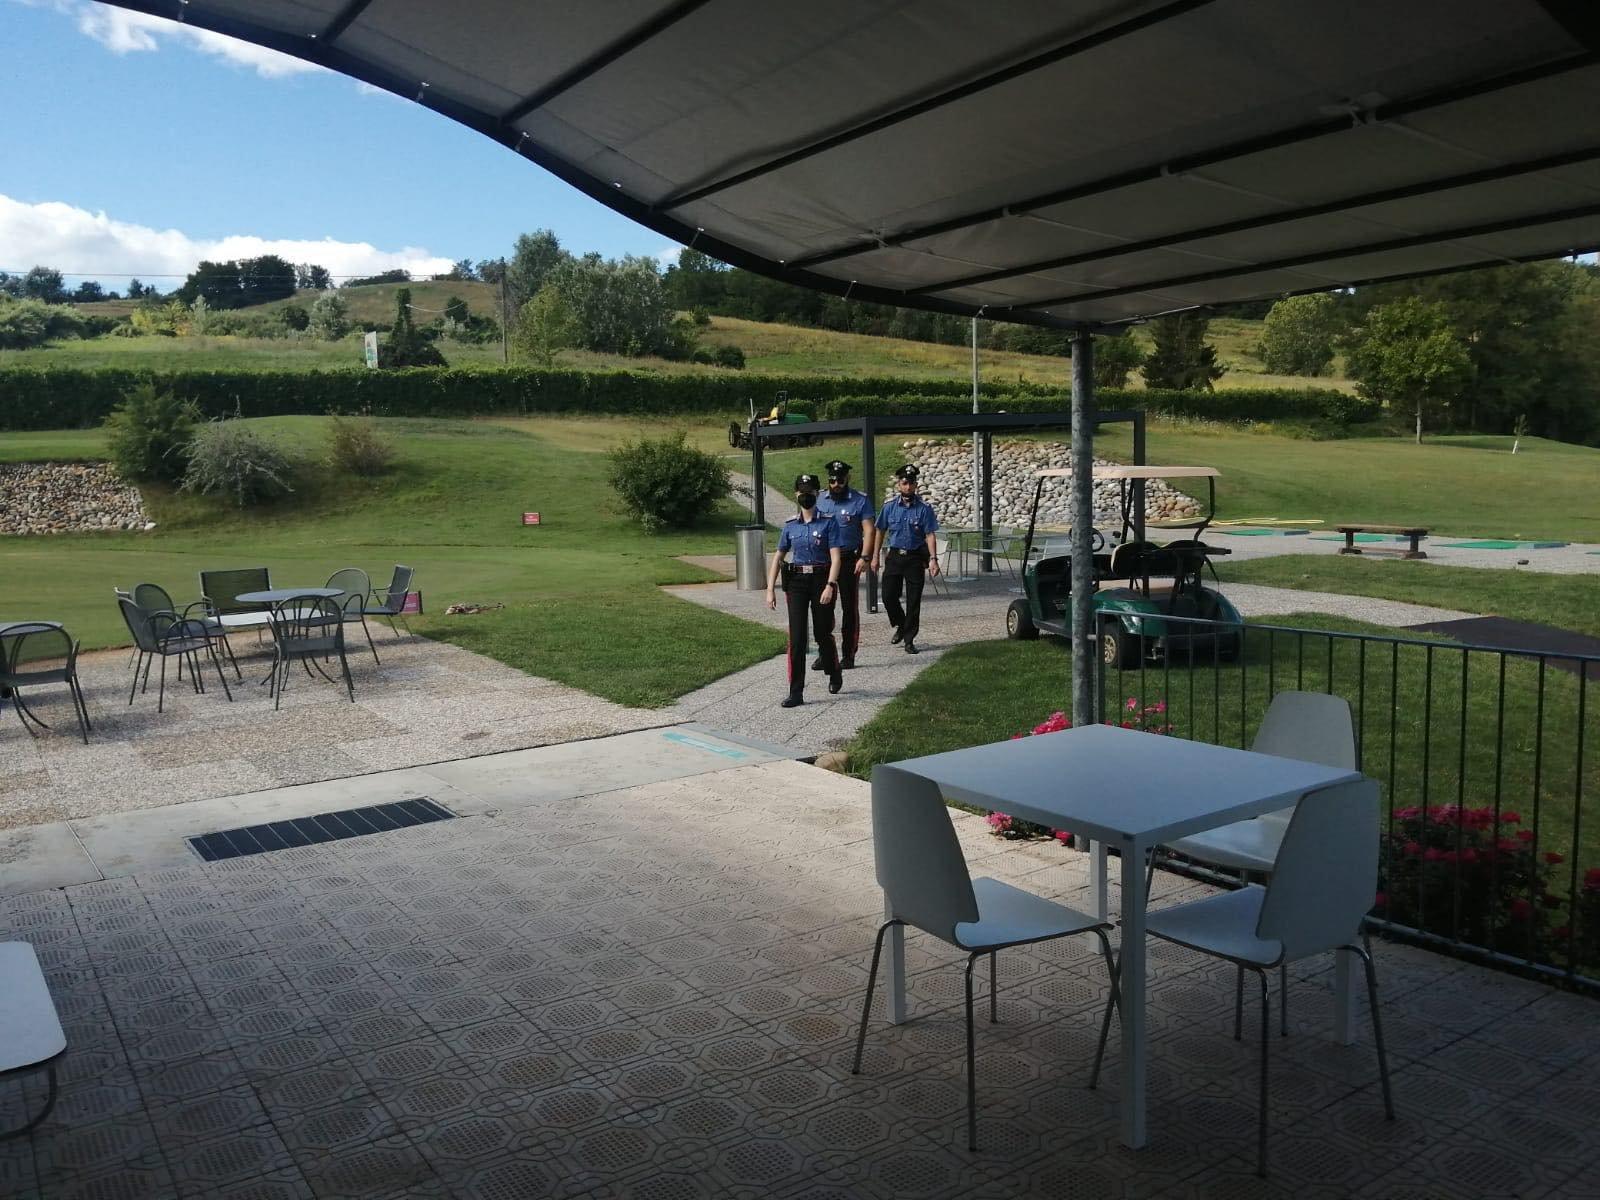 Nuovi danneggiamenti al Golf Club Monferrato a Casale